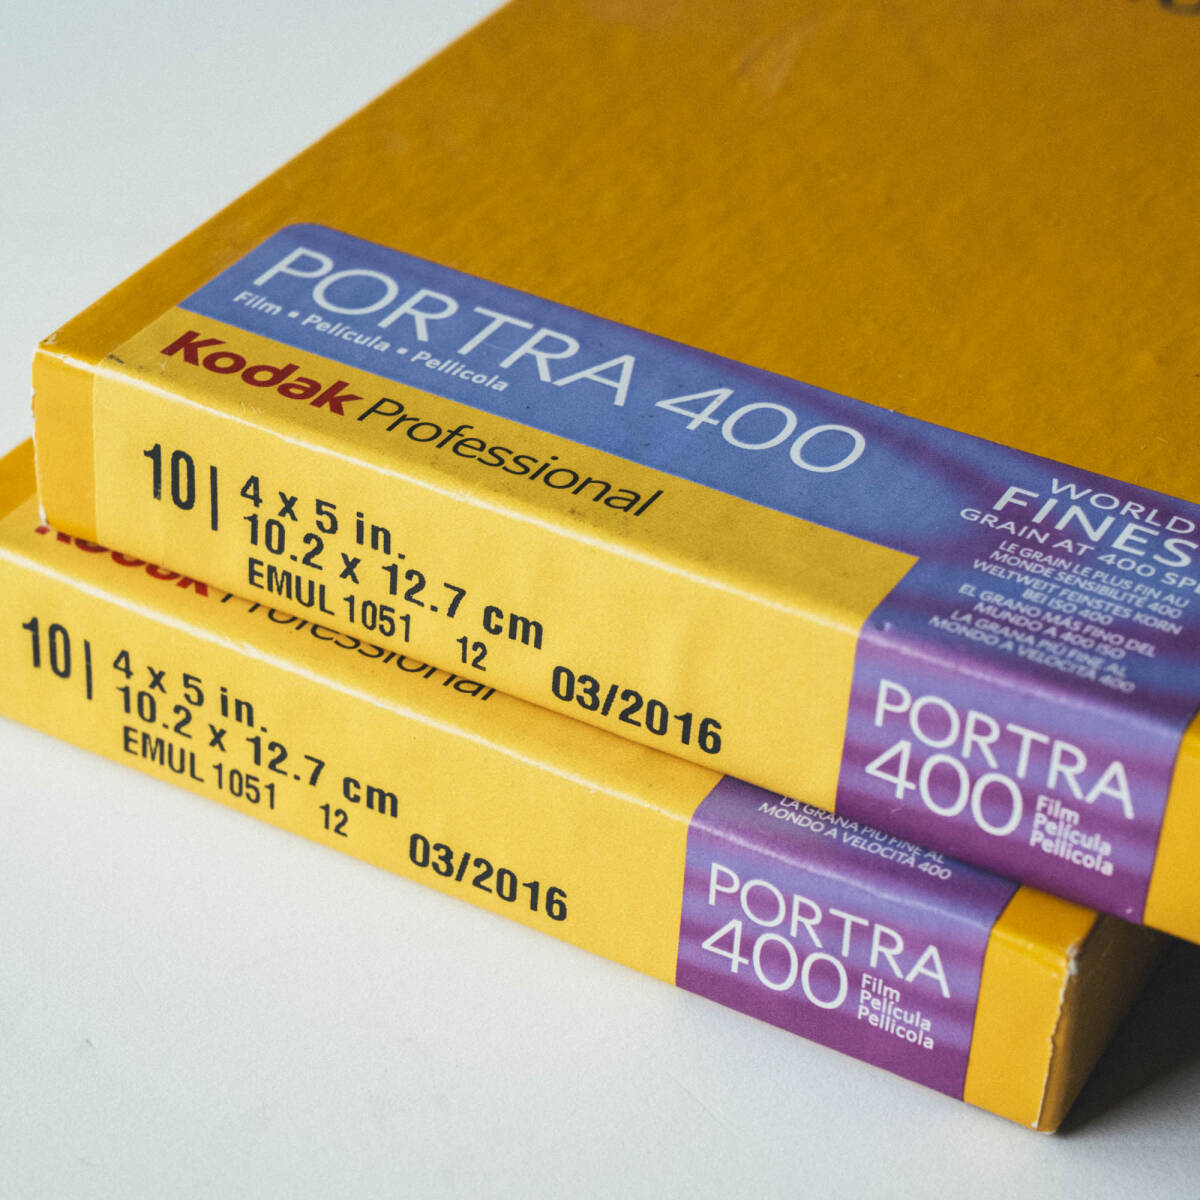 Kodak PORTRA( port la)400 4×5 10 sheets 2set expiration of a term (03/2016)